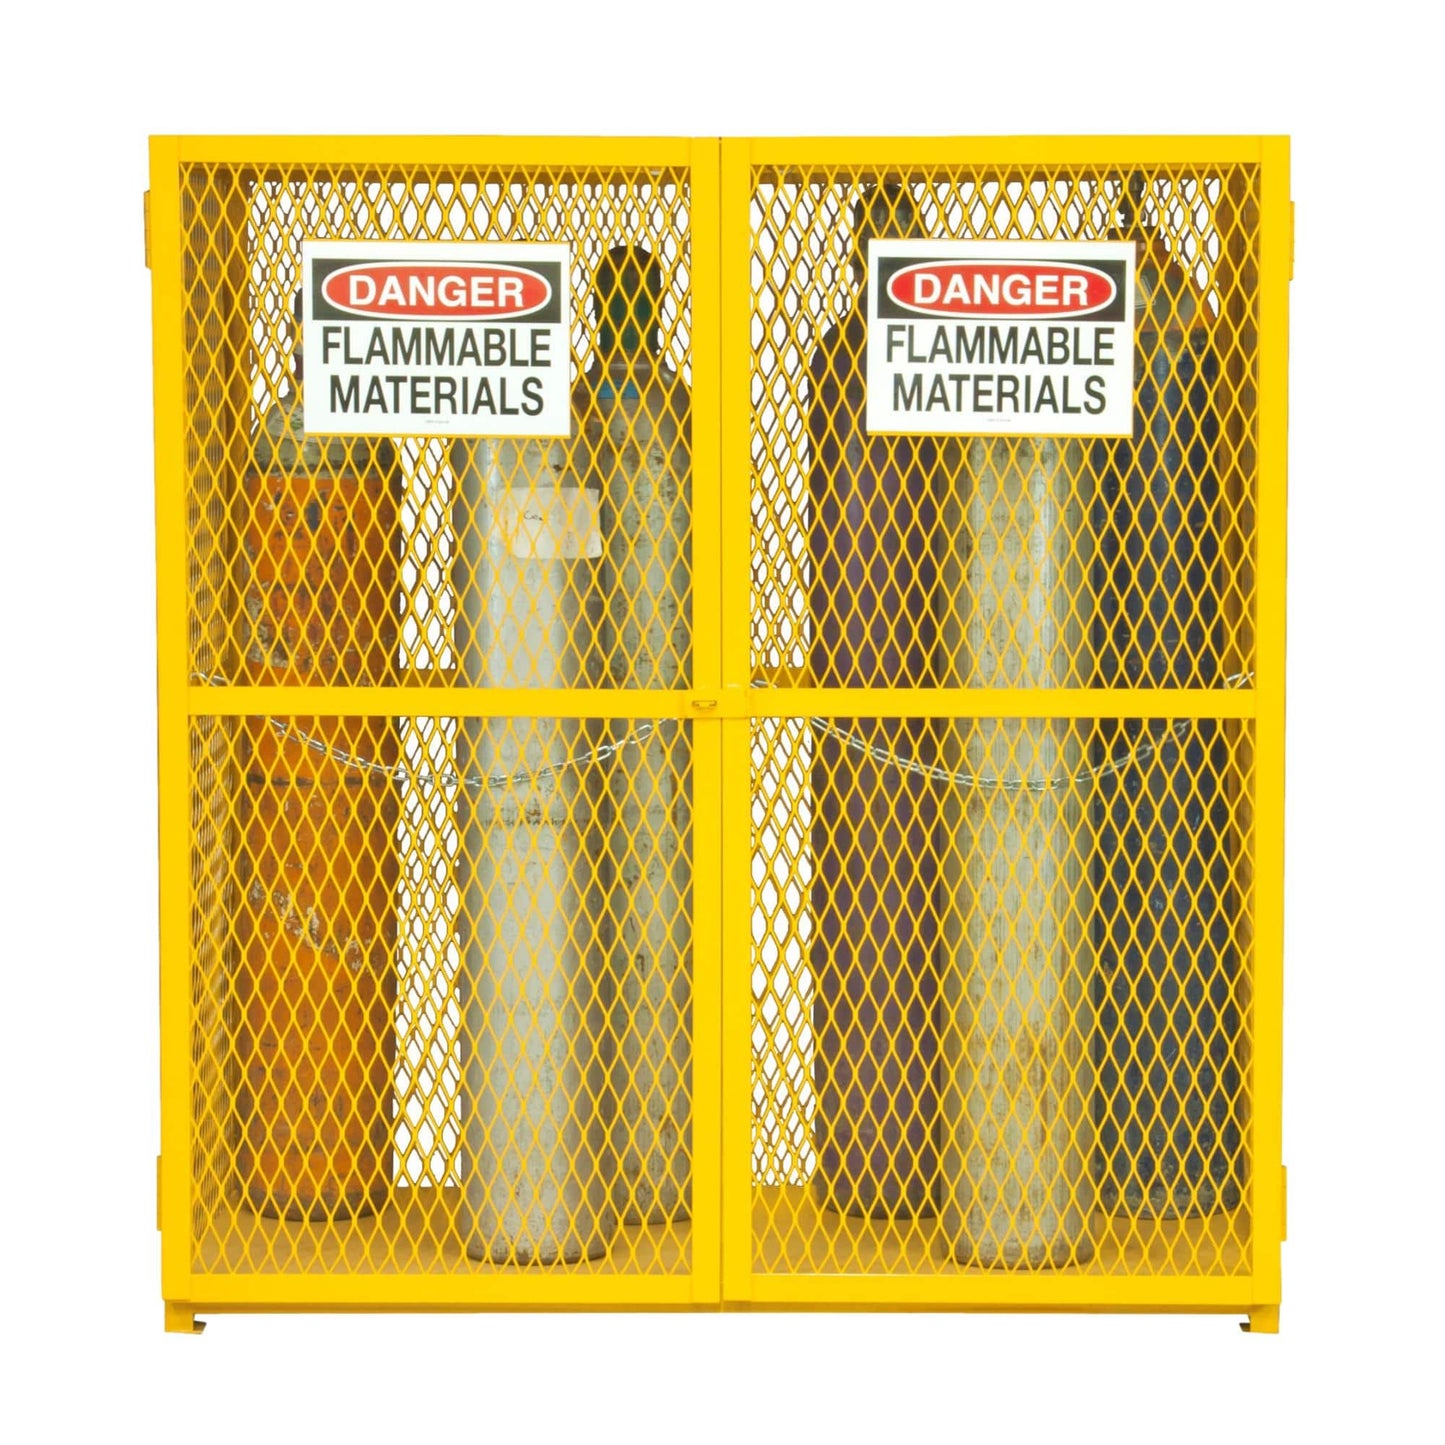 Vertical Gas Cylinder Cabinets - Durham